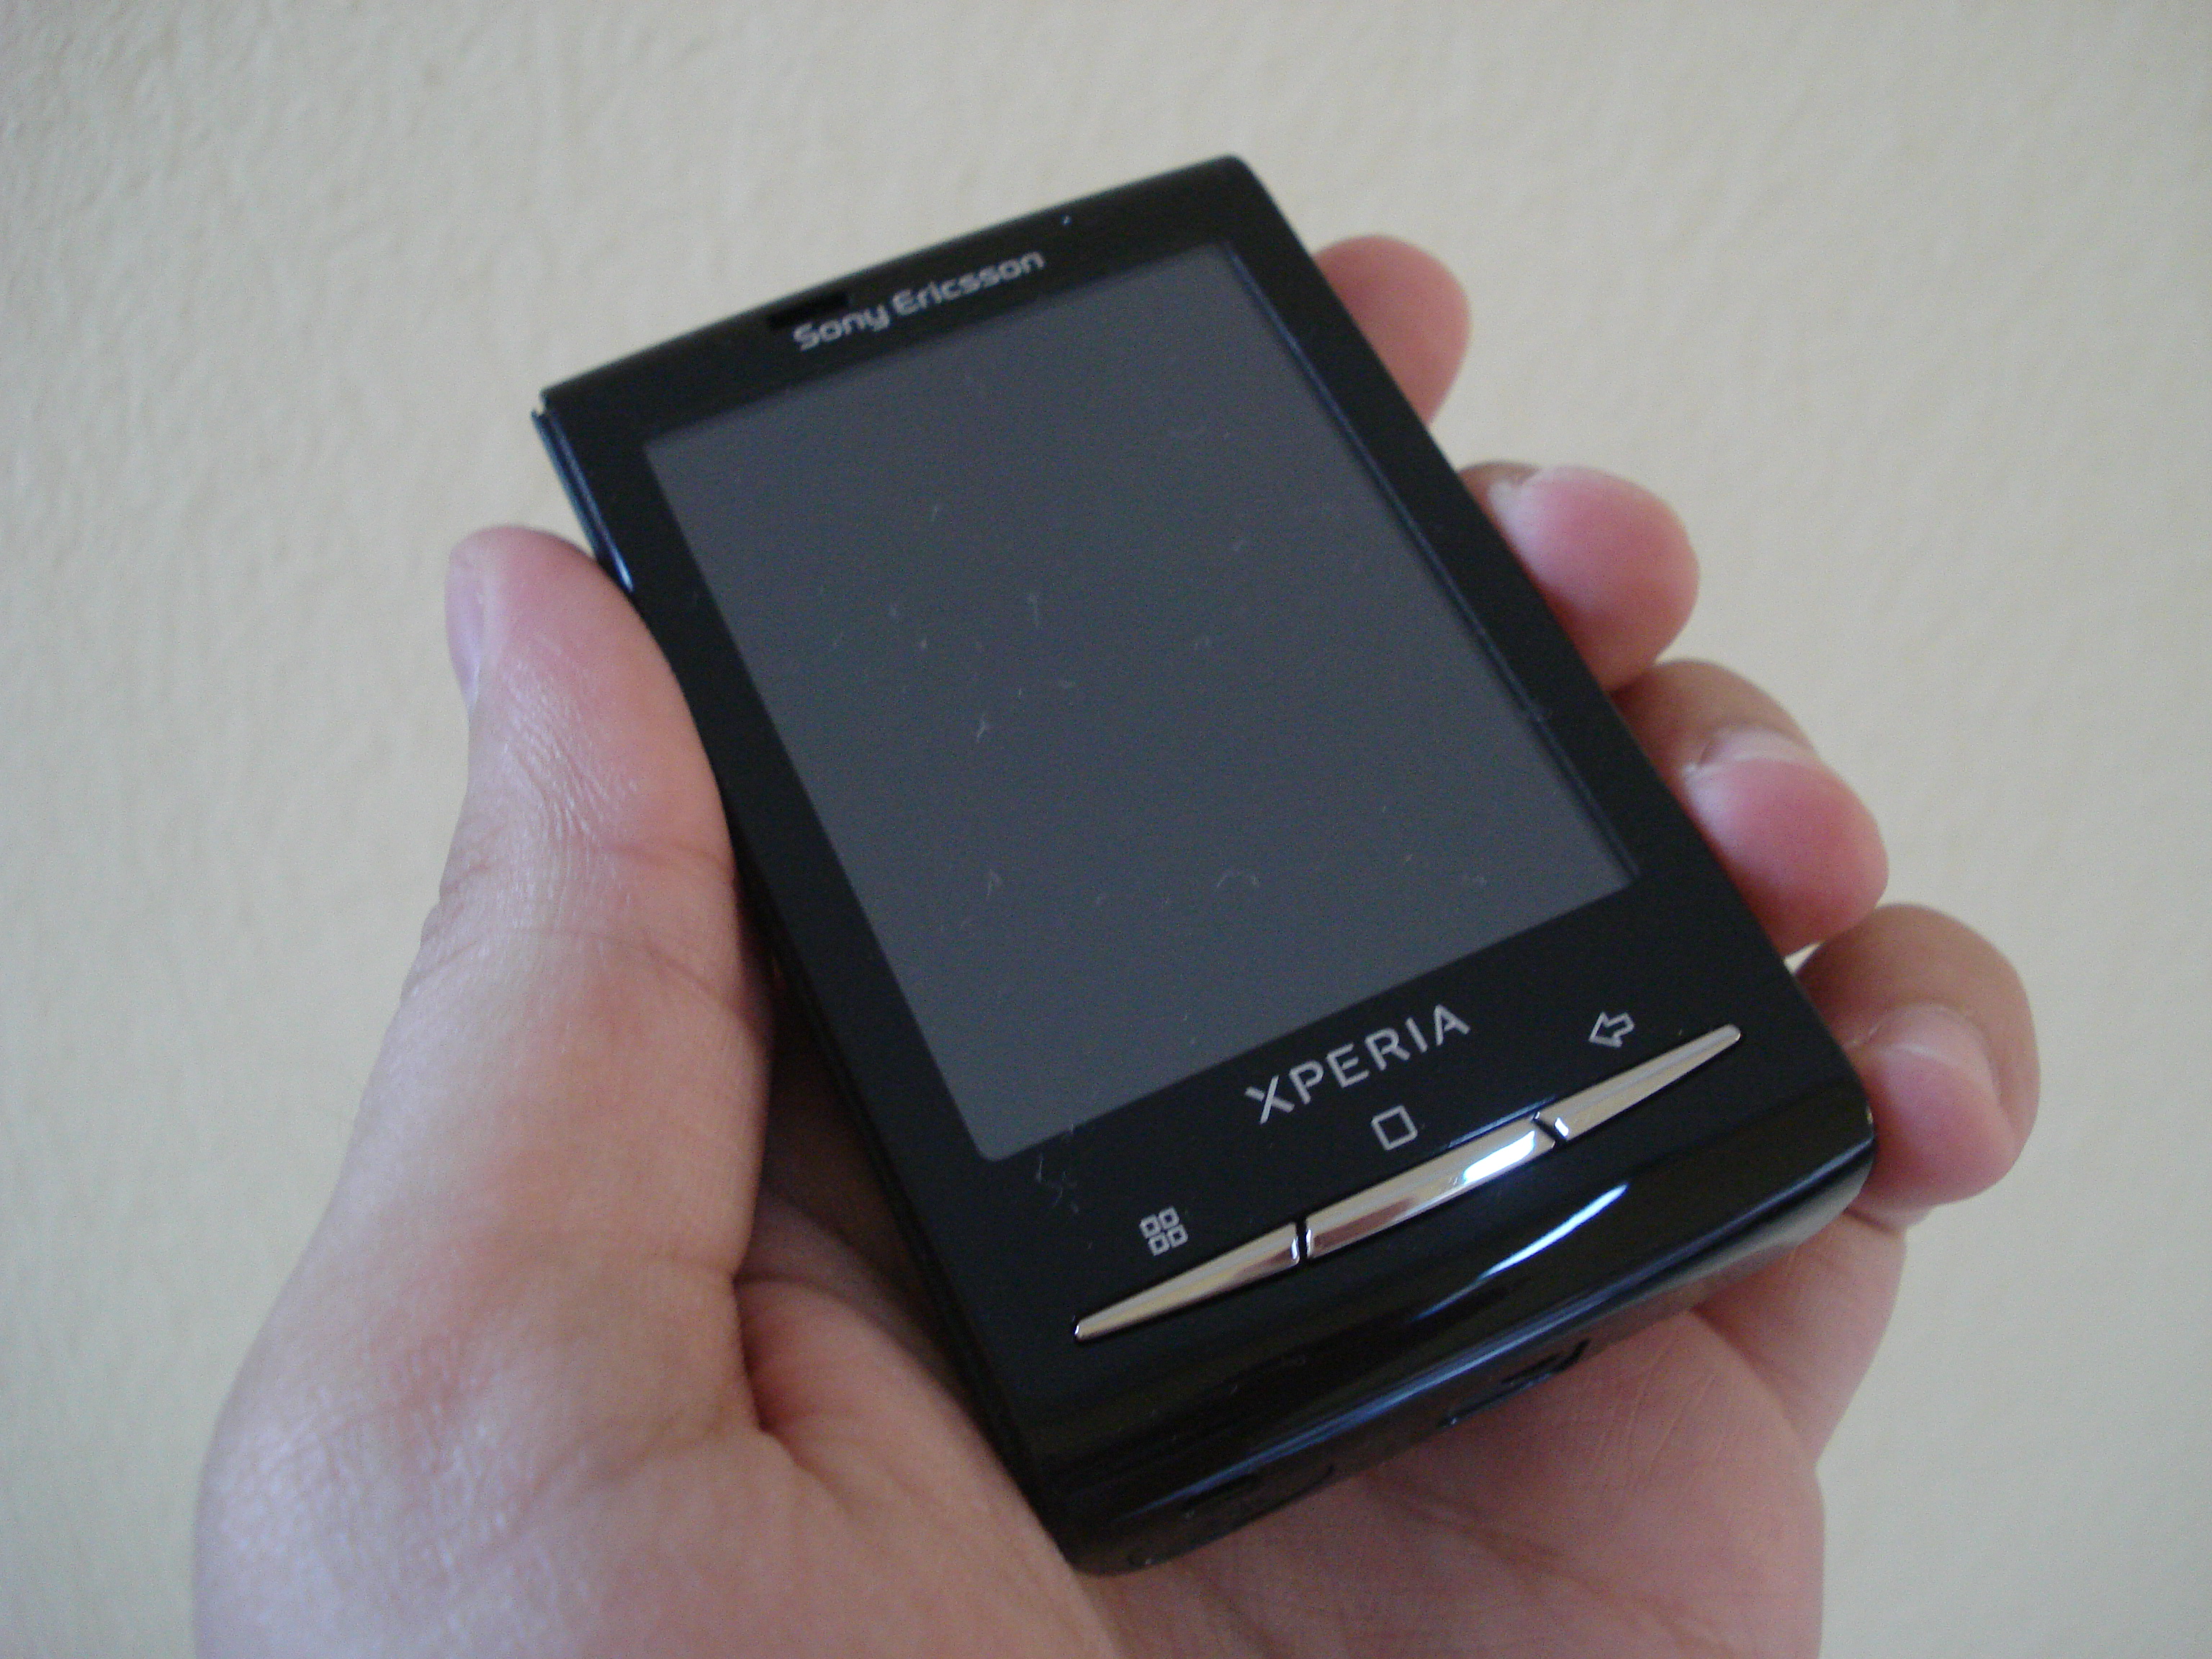 Sony xperia mini. Sony Xperia x10 Mini. Sony Ericsson Xperia x10 Mini. Sony Ericsson Xperia 2010. Sony Xperia Mini st15i.